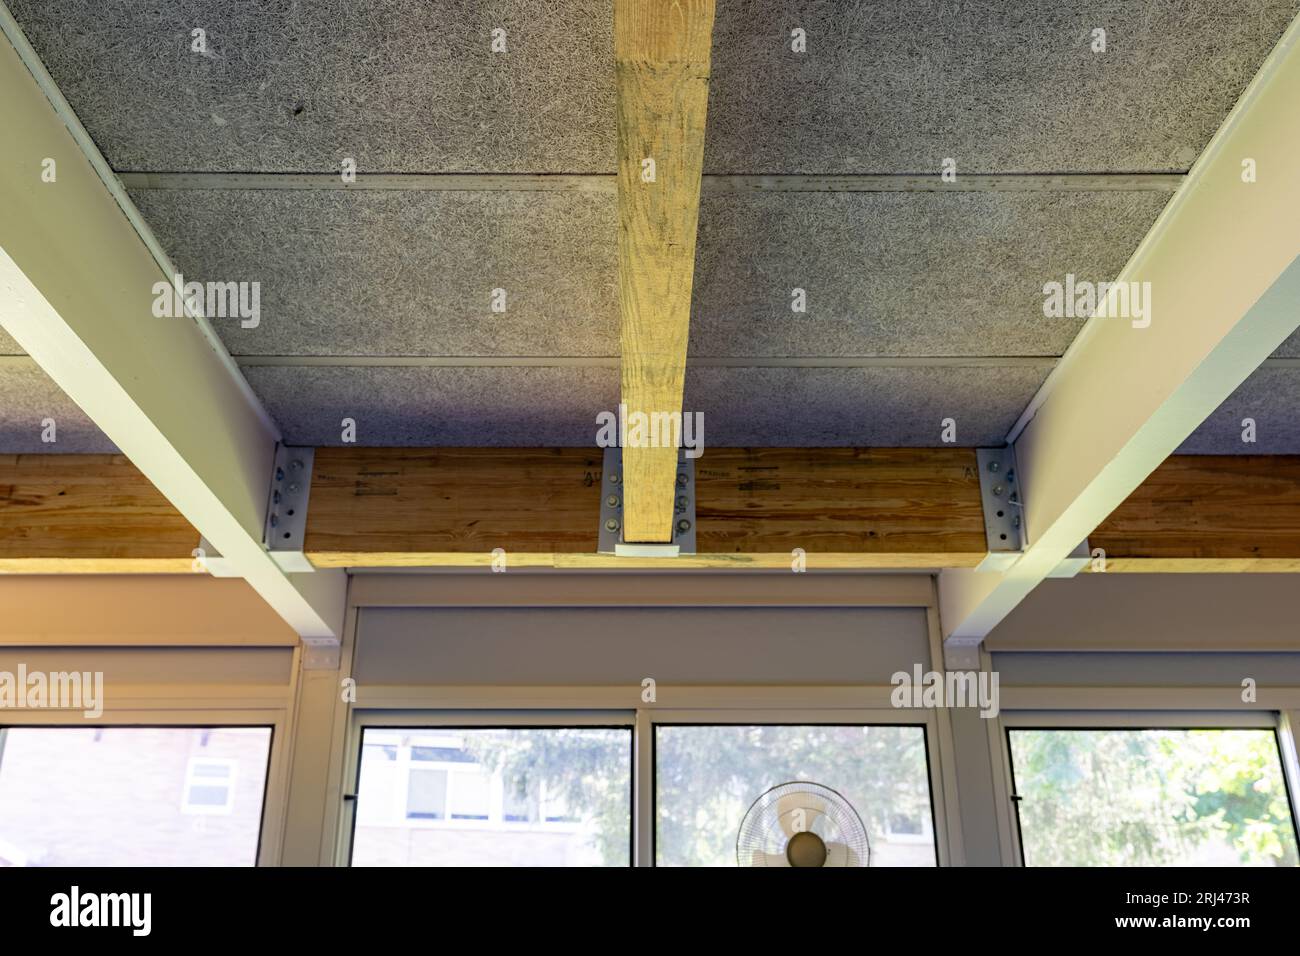 Utilisation de poutres stratifiées durables en colle bois pour renforcer un bâtiment existant. Banque D'Images